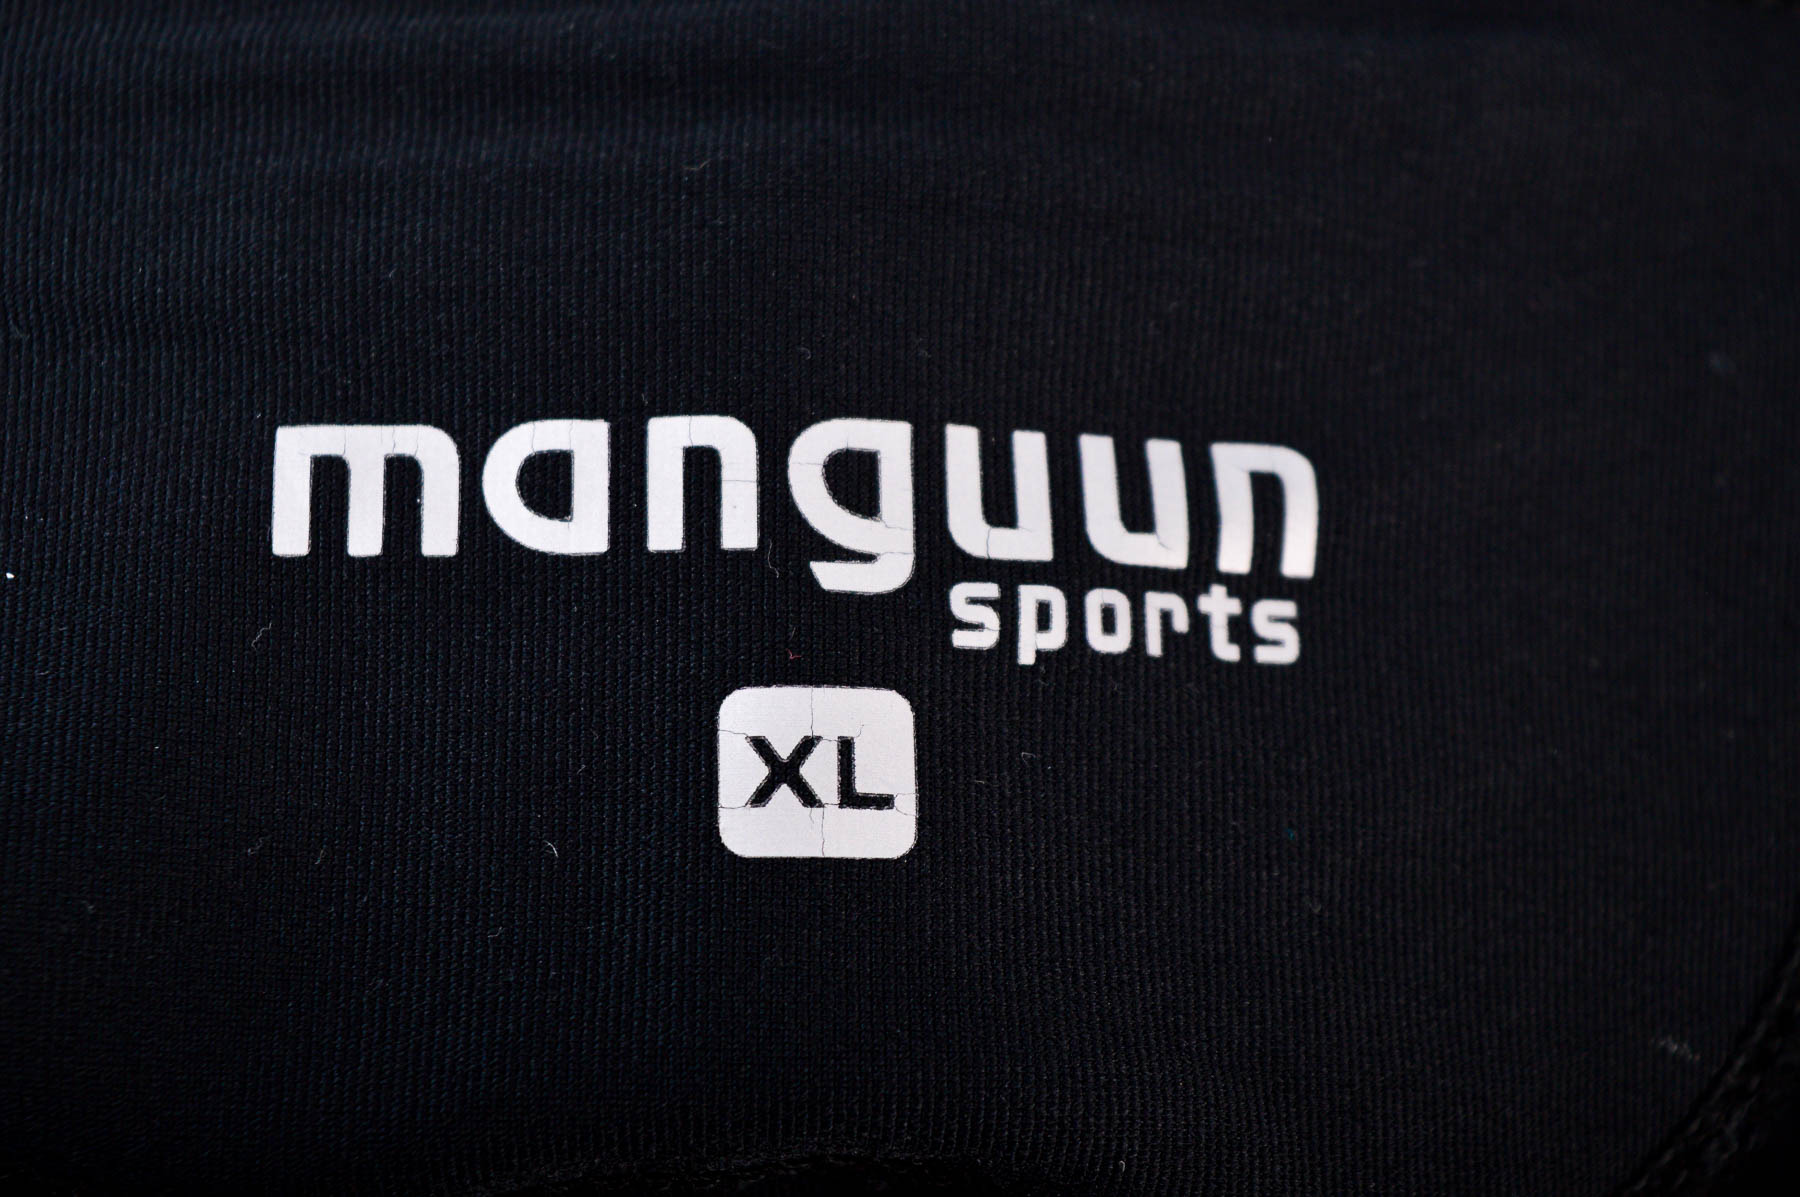 Αθλητικά παντελόνια ανδρών - Manguun sports - 2